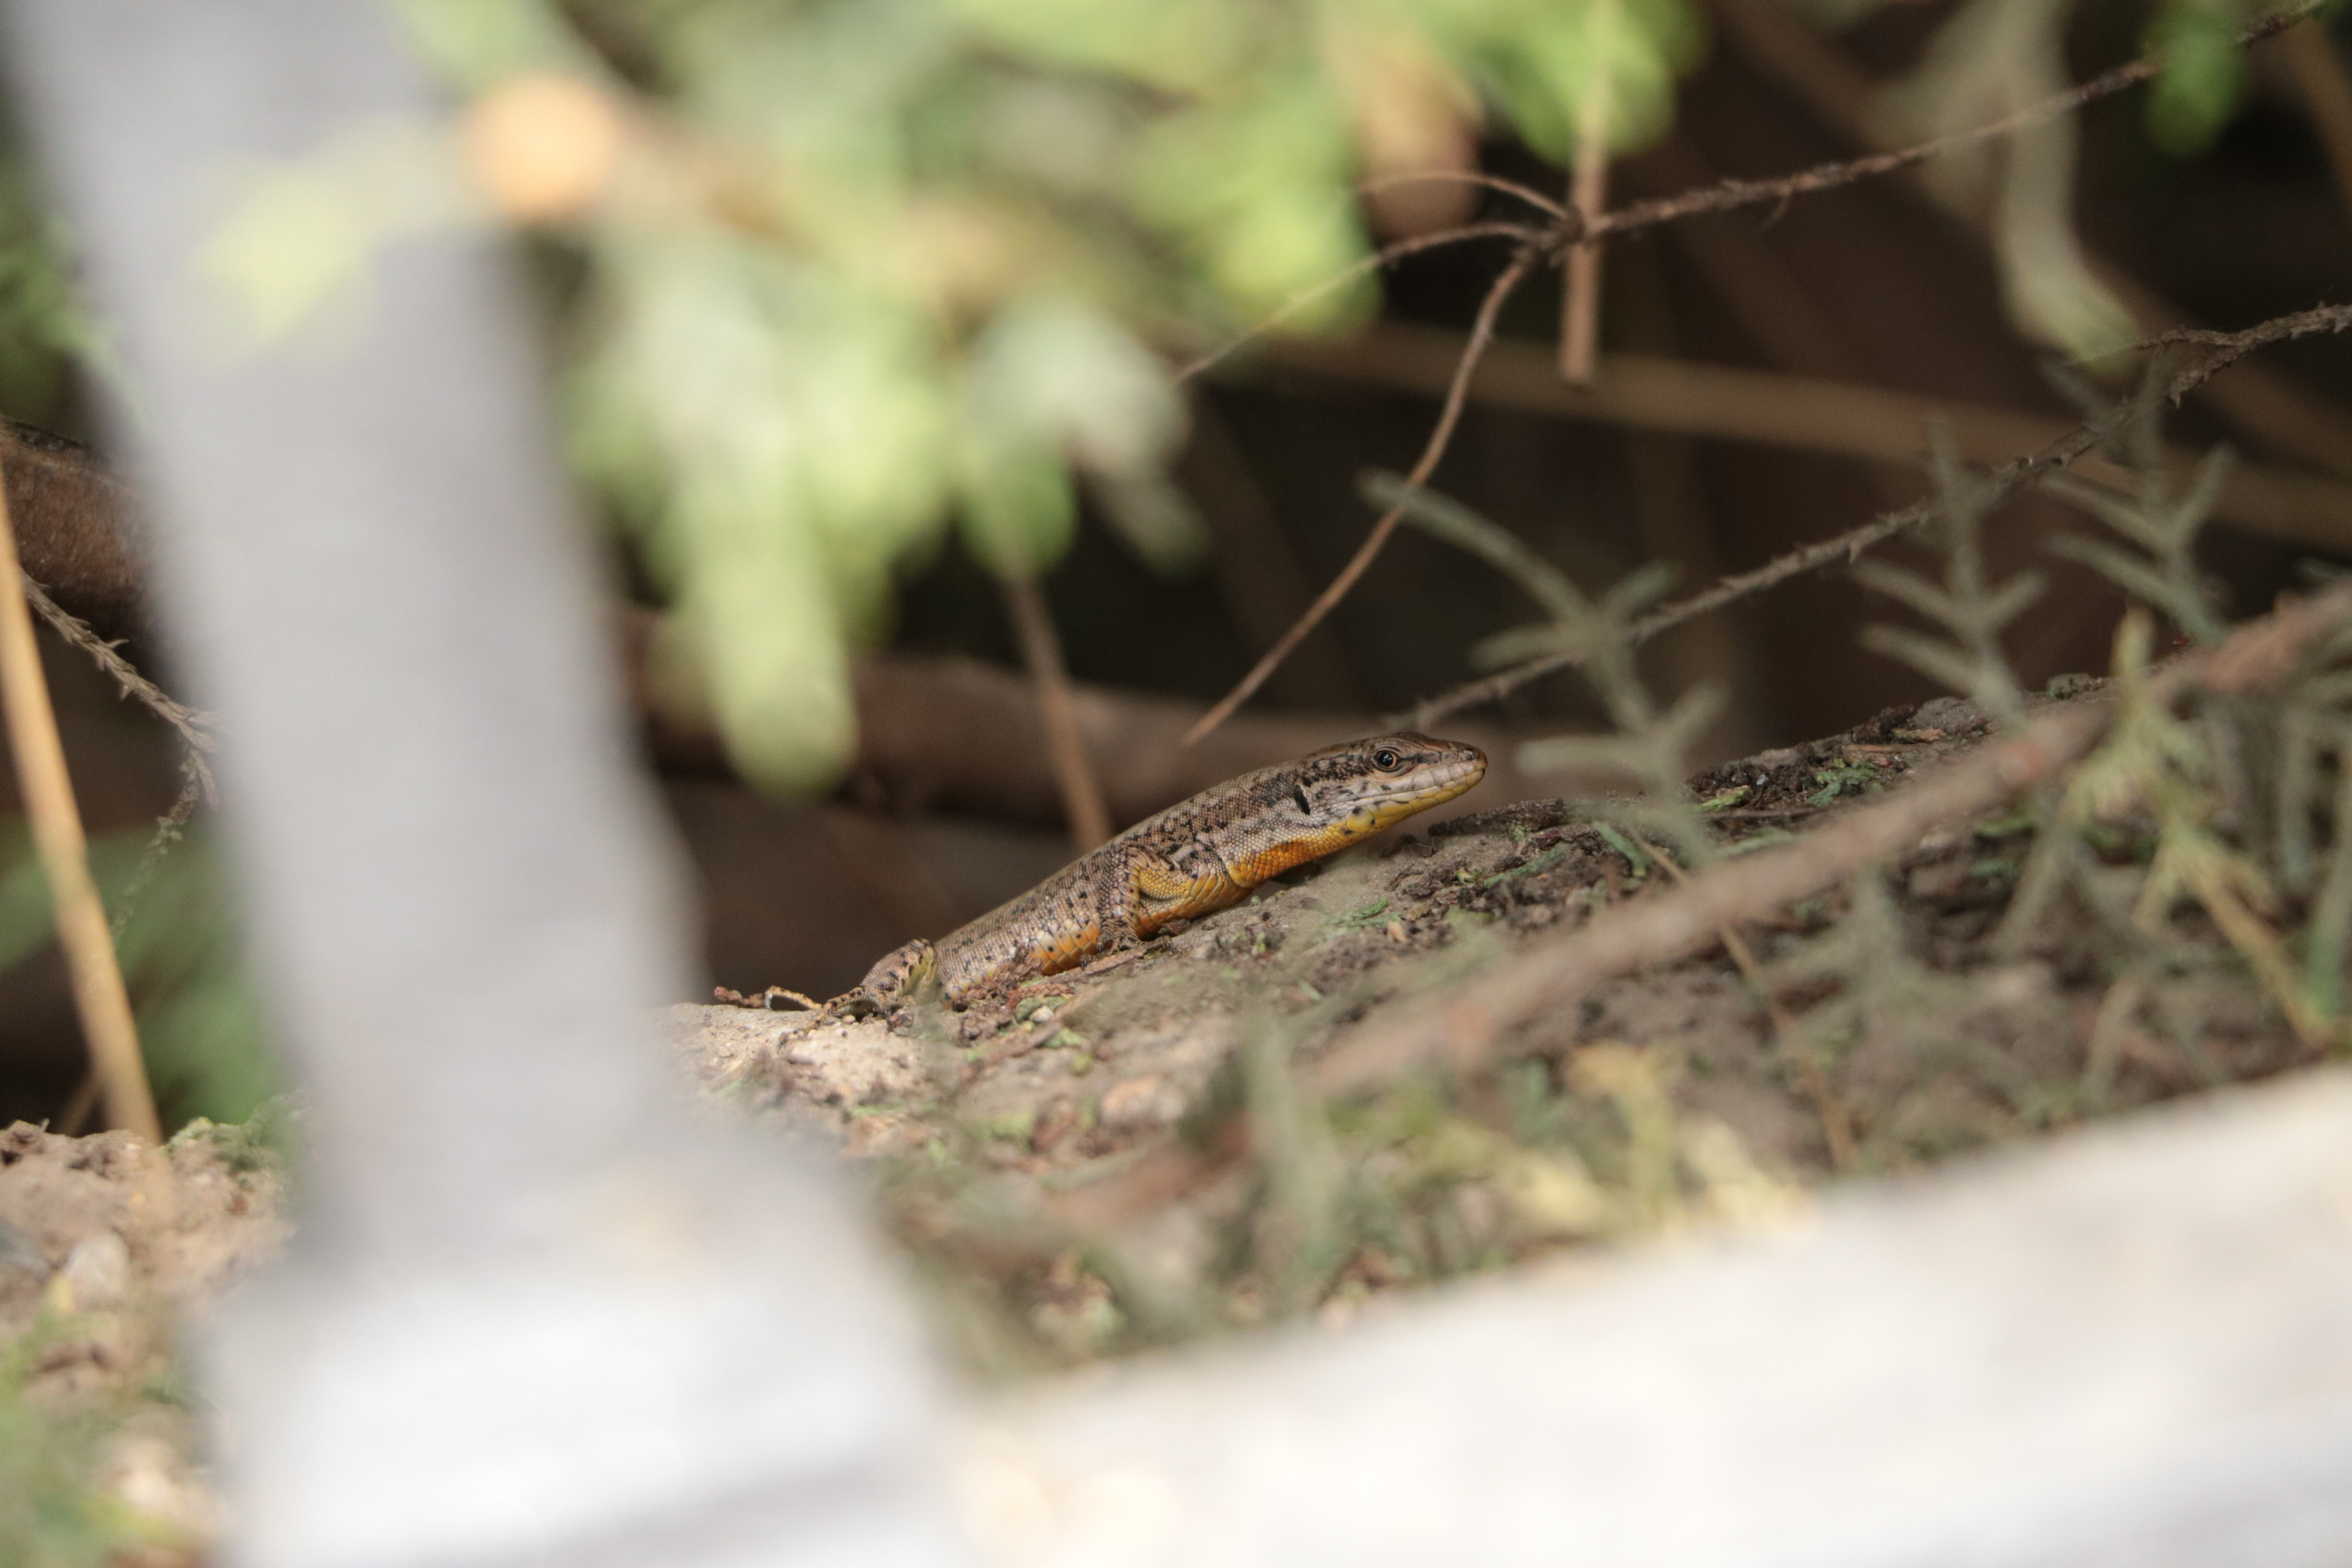 Aquí podemos ver una lagartija hispánica común por las calles y avenidas de Sevilla, se trata de Podarcis hispanicus.